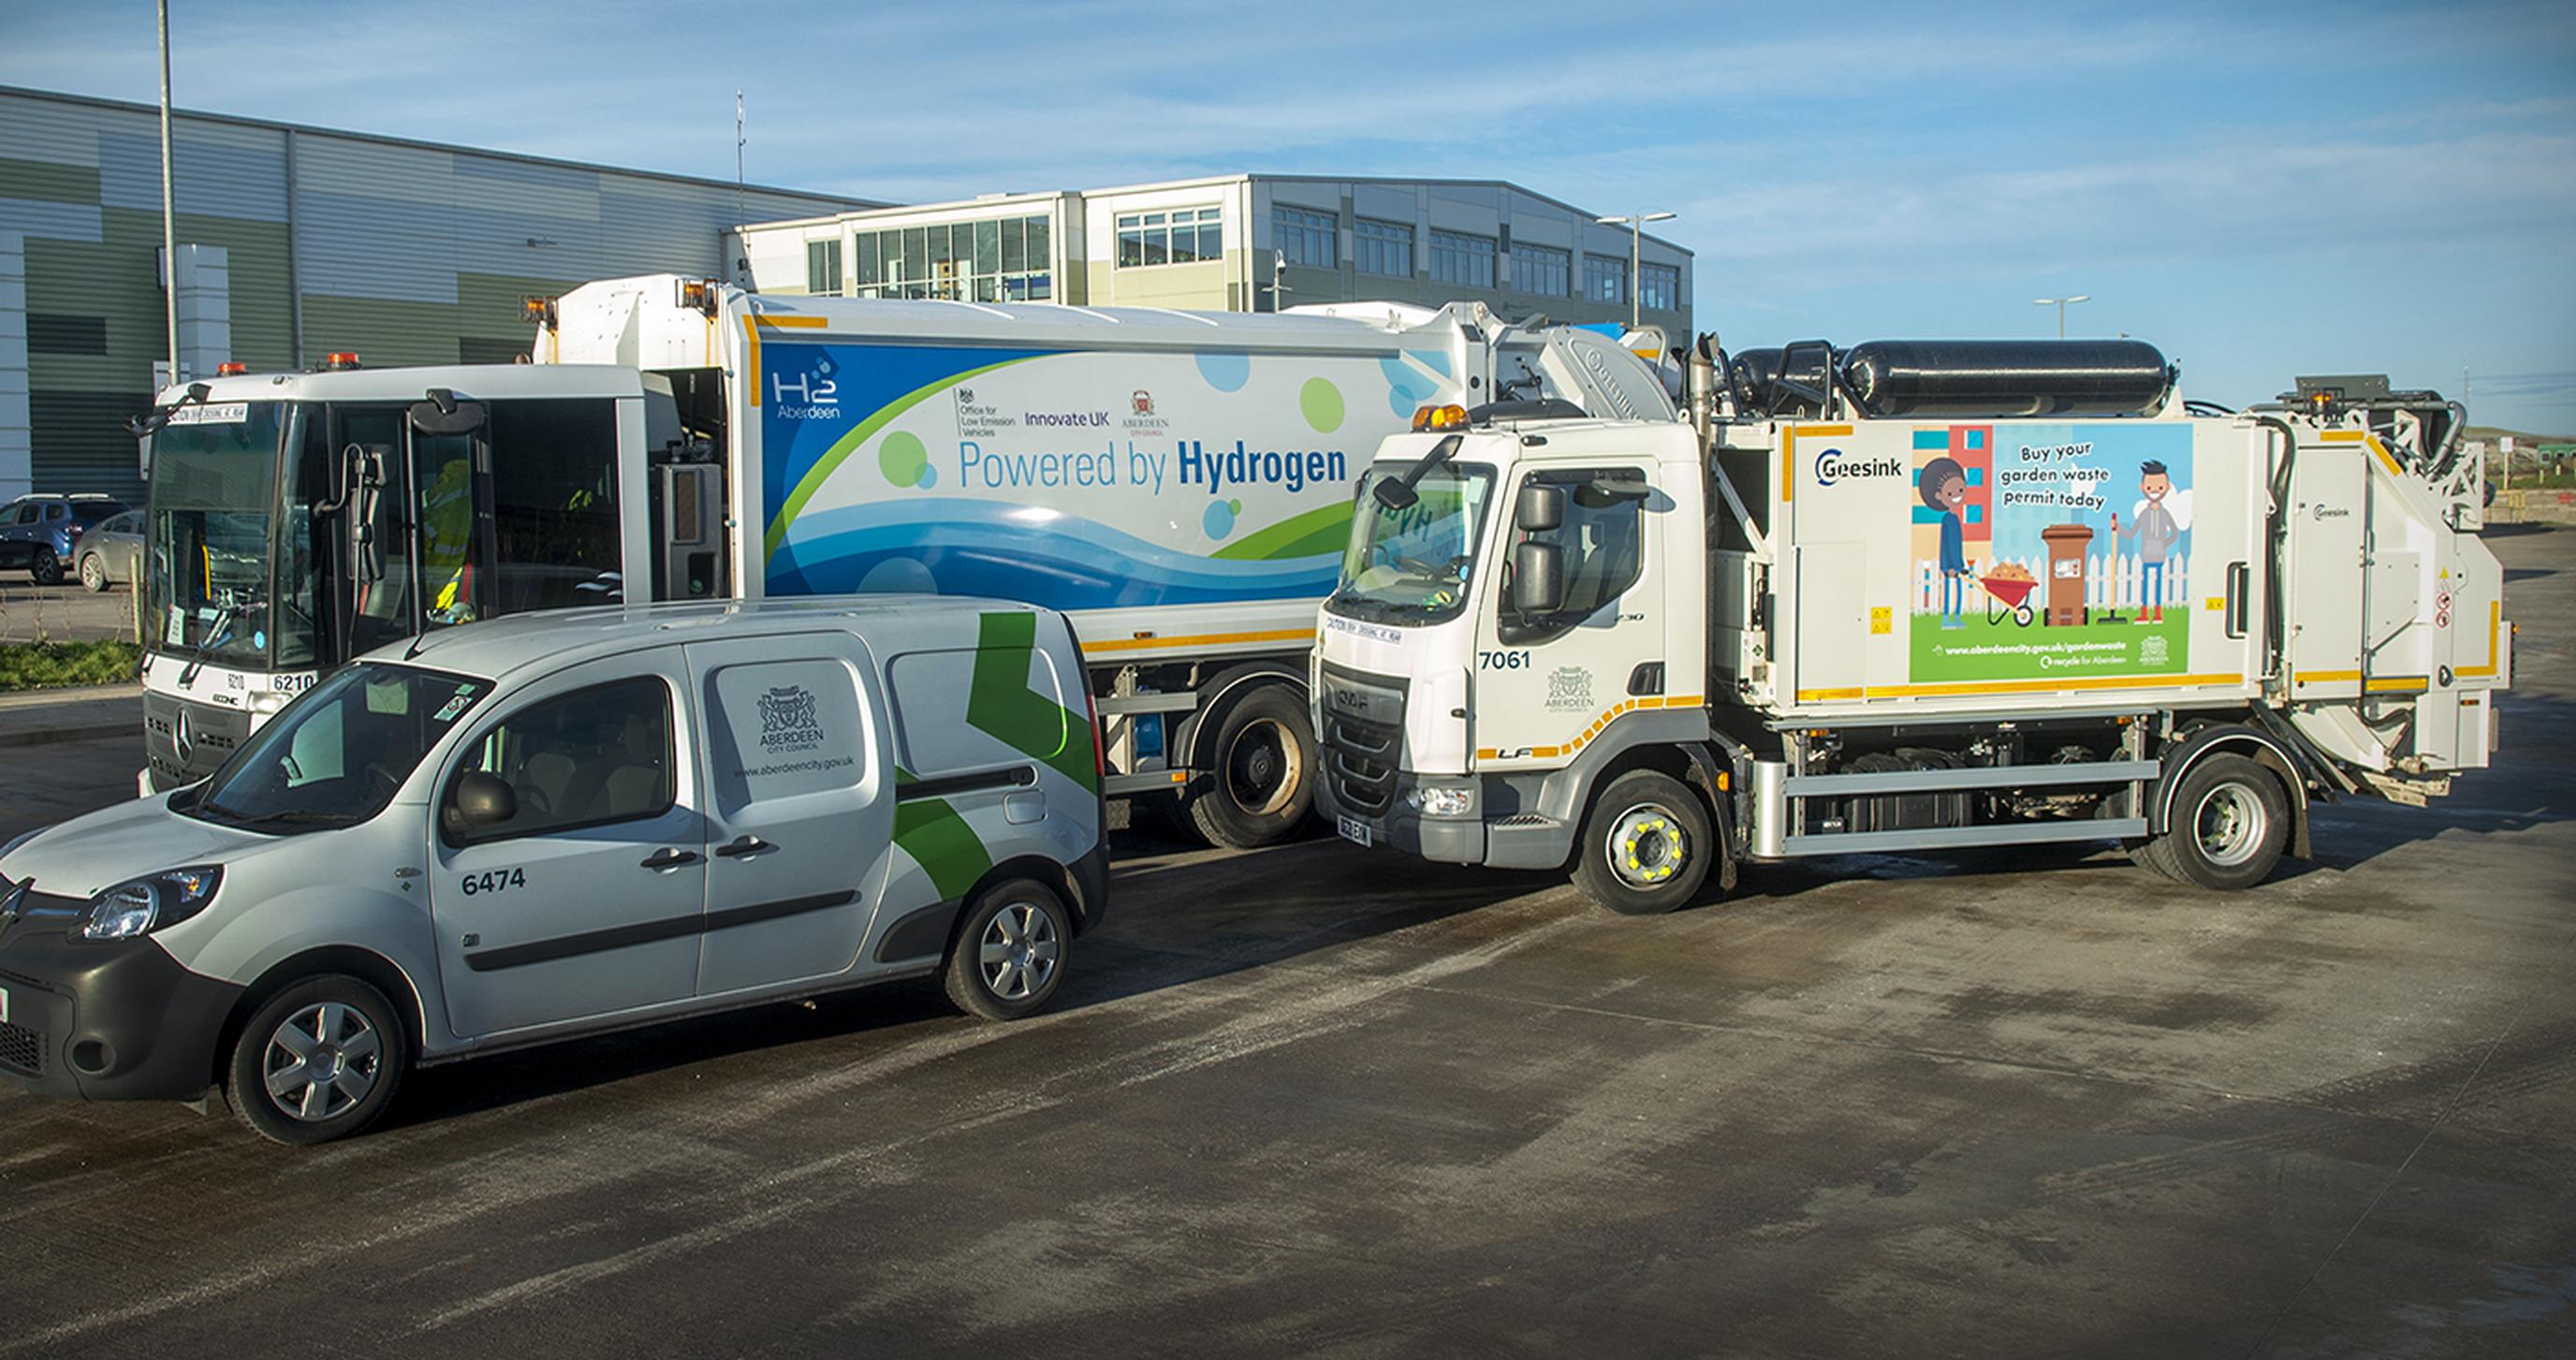 Vehicles from Aberdeen City Council`s fleet